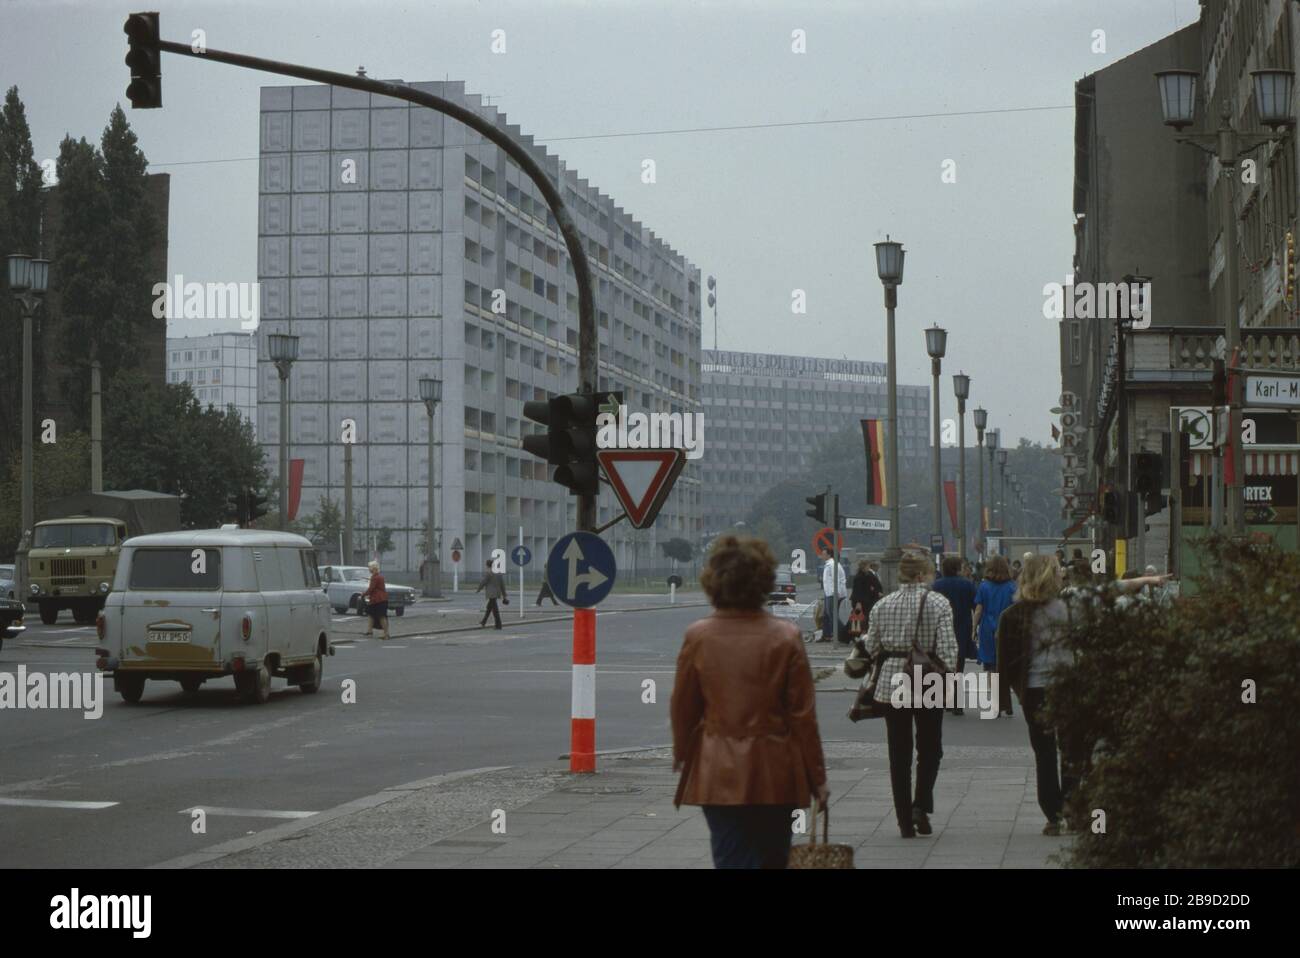 Fußgänger gehen über die Kreuzung Straße der Pariser Kommune / Karl-Marx-Allee, die mit DDR- und roten (sowjetischen) Flaggen dekoriert ist - im Hintergrund ist das Verlagsgebäude des neuen Deutschlands zu sehen. [Automatisierte Übersetzung] Stockfoto